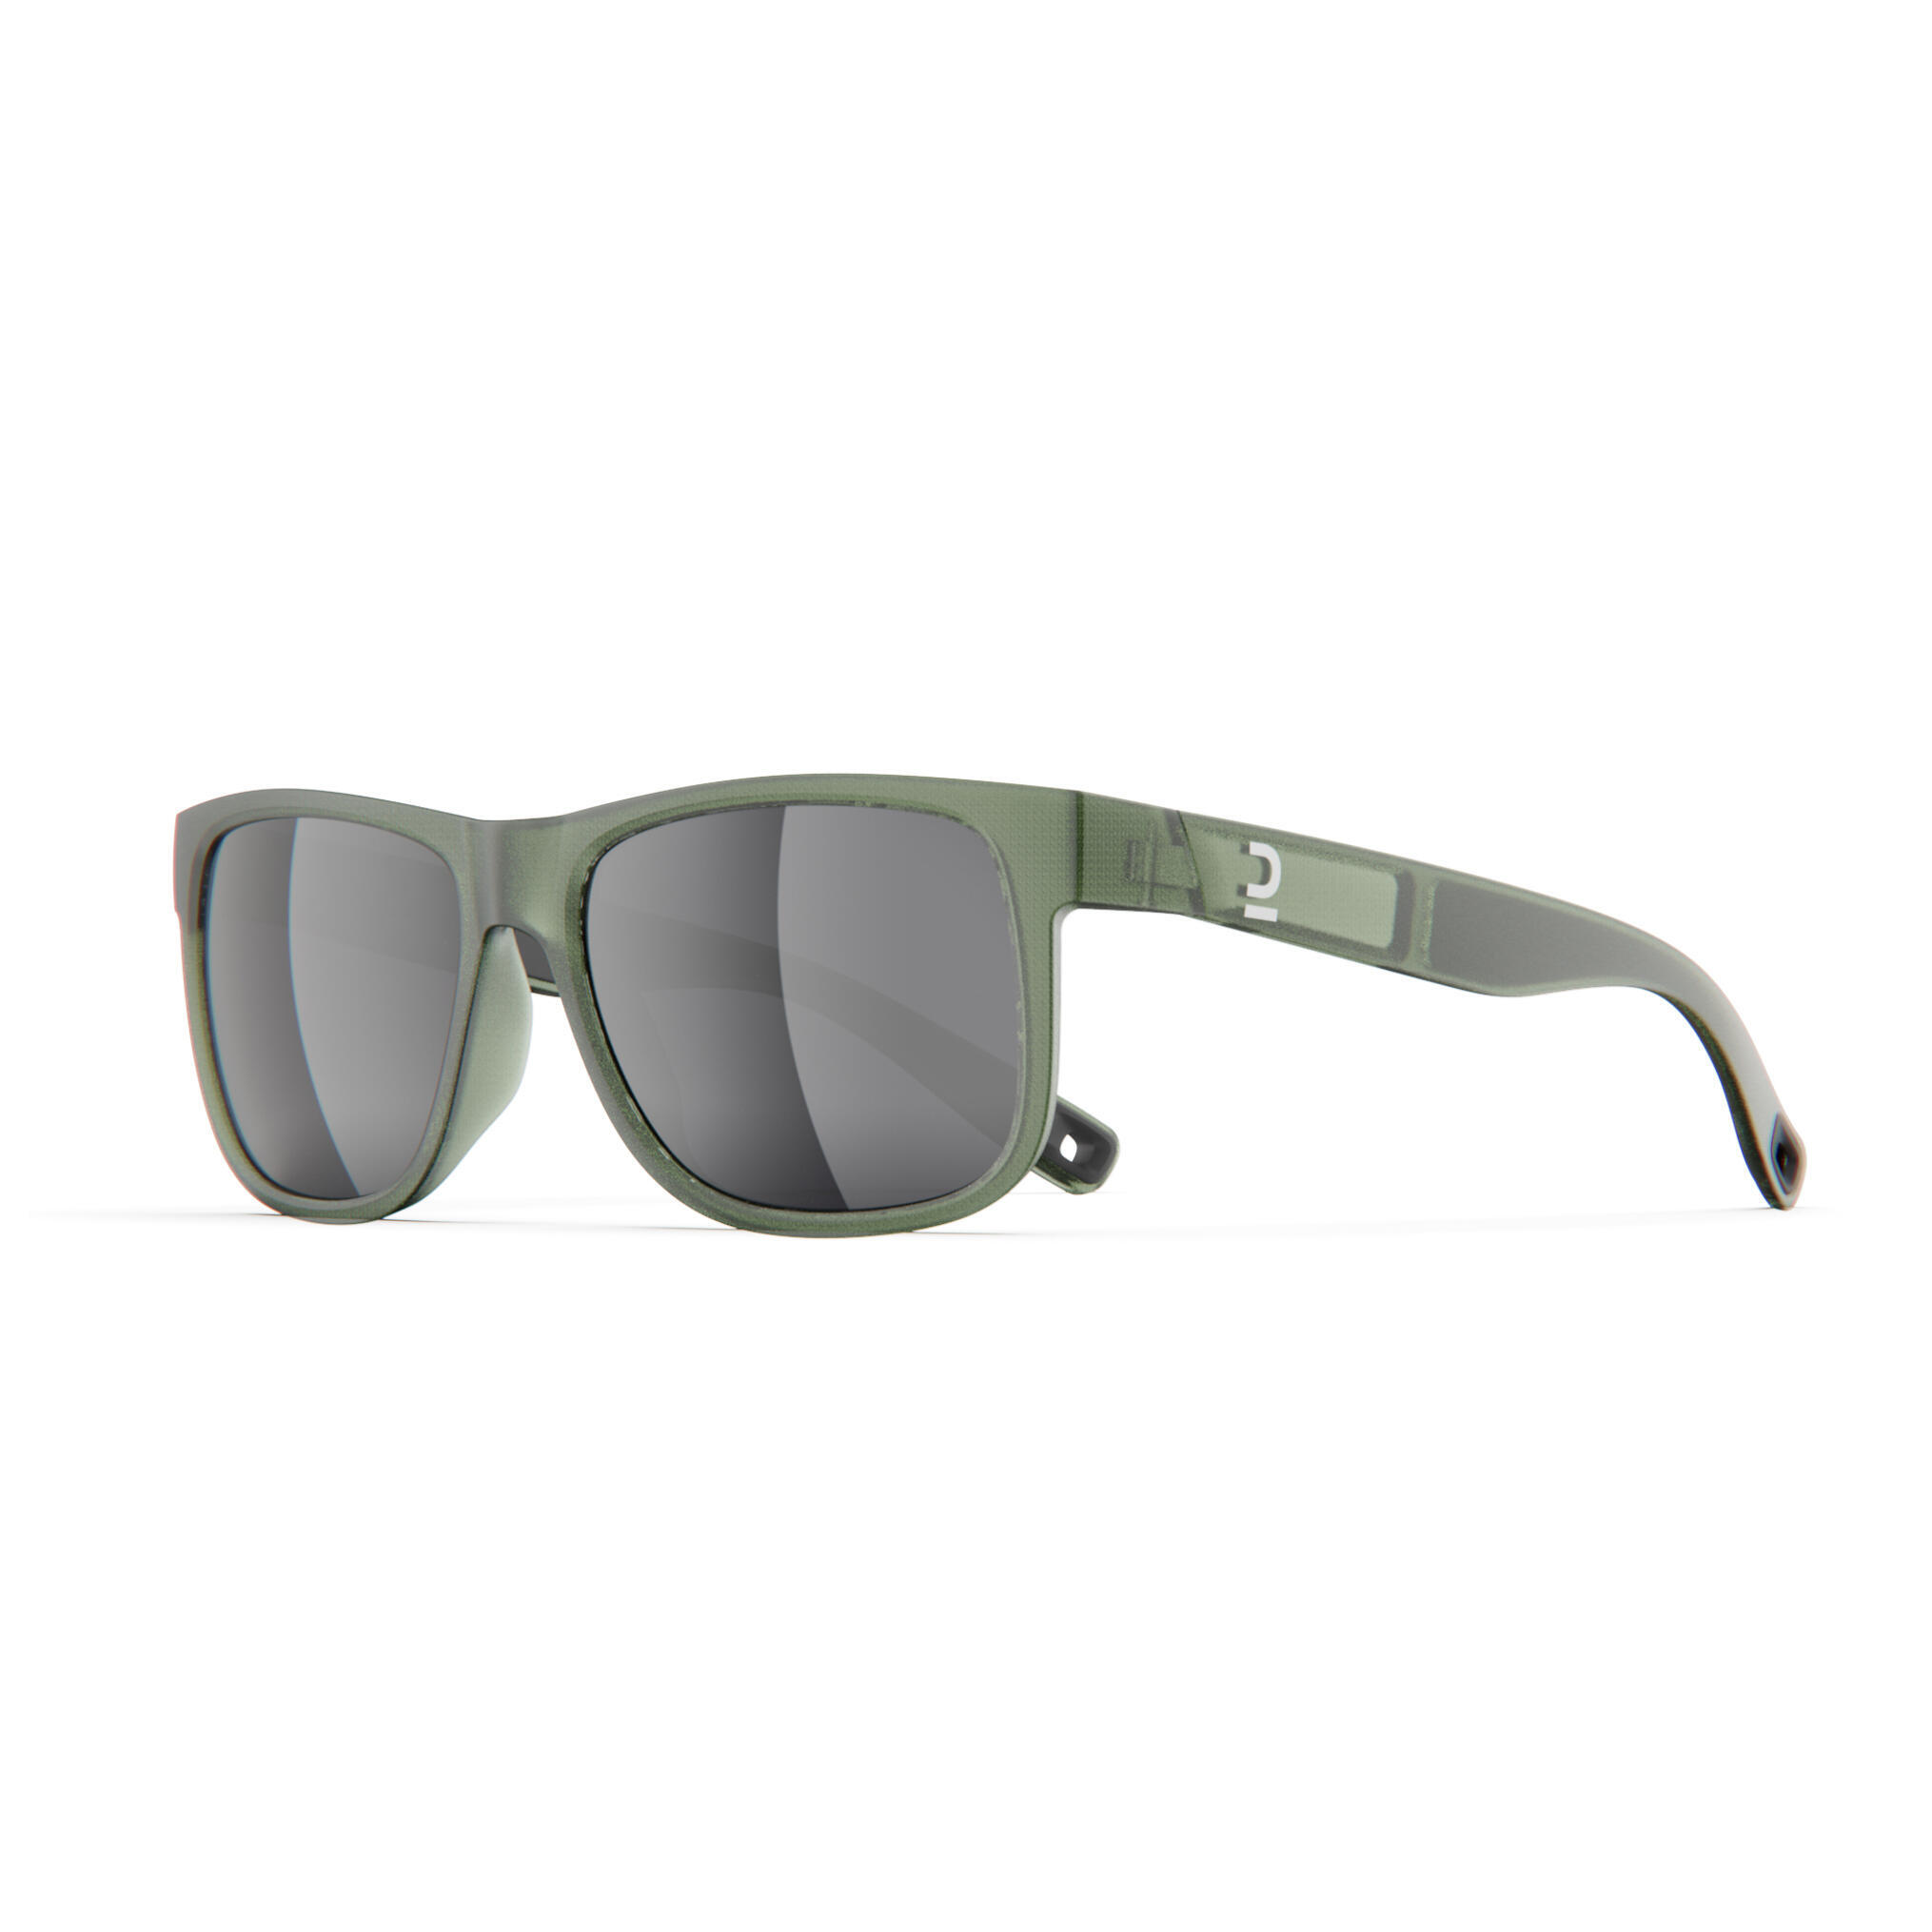 Очки солнцезащитные Quechua MH530 для походов, категории 3, хаки / серебристый / лаврово-зеленый солнцезащитные очки военпро хаки бежевый